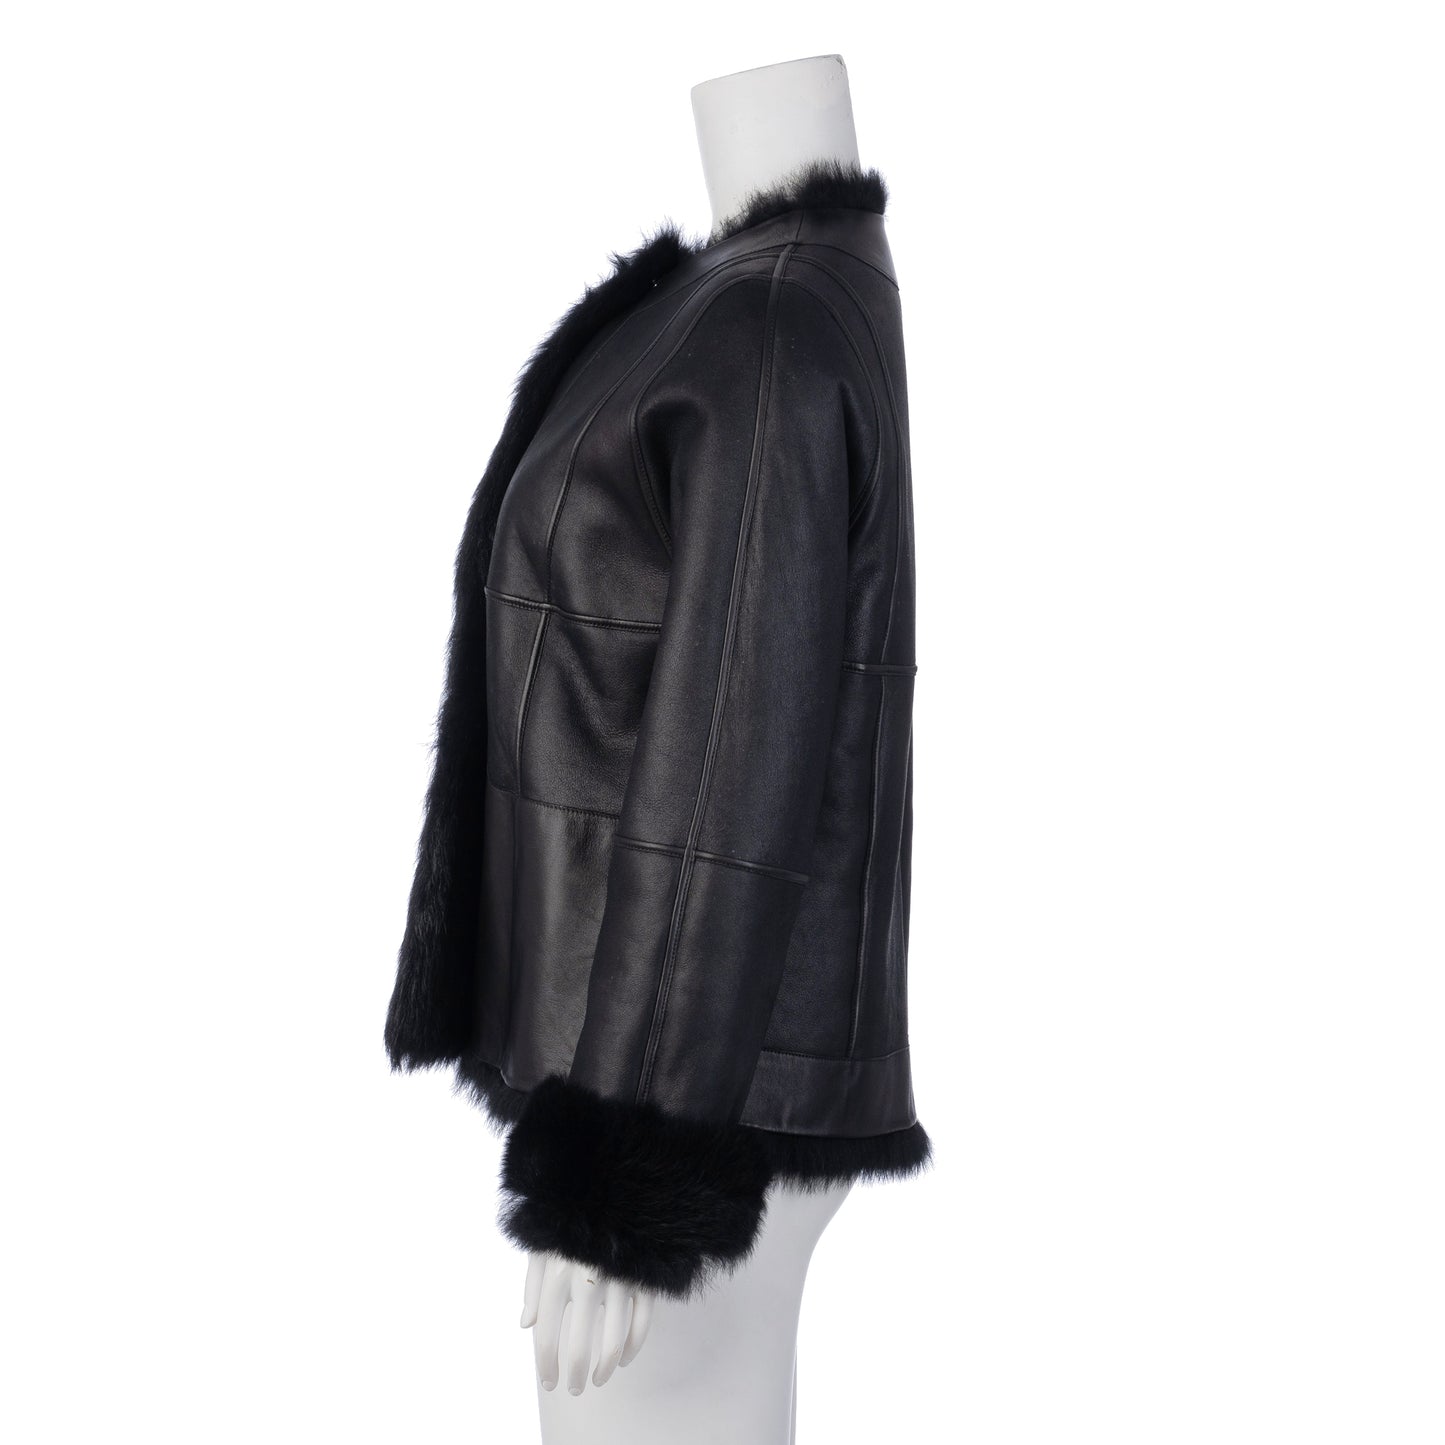 Fur Trimmed Leather Jacket